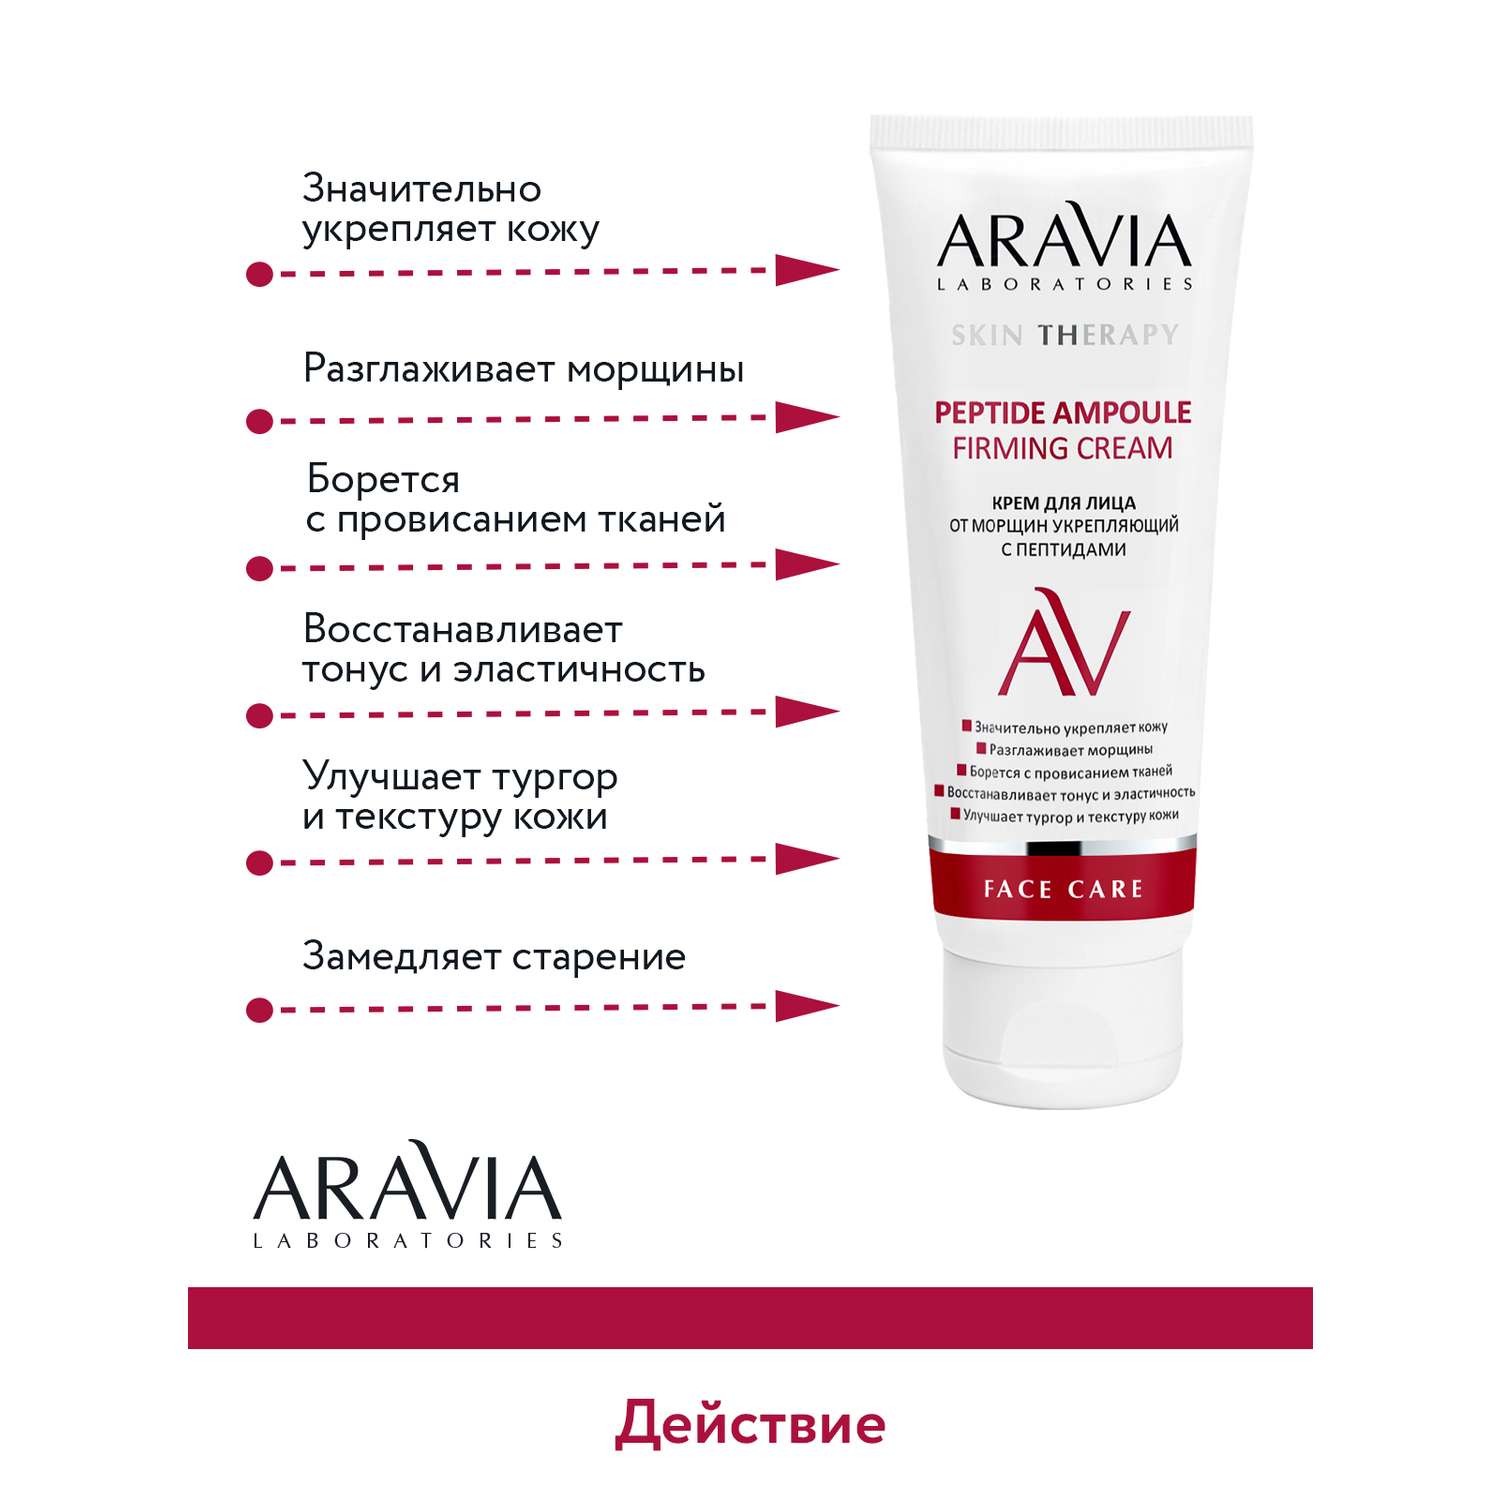 Крем для лица ARAVIA Laboratories от морщин с пептидами Peptide Ampoule Firming Cream 50 мл - фото 5